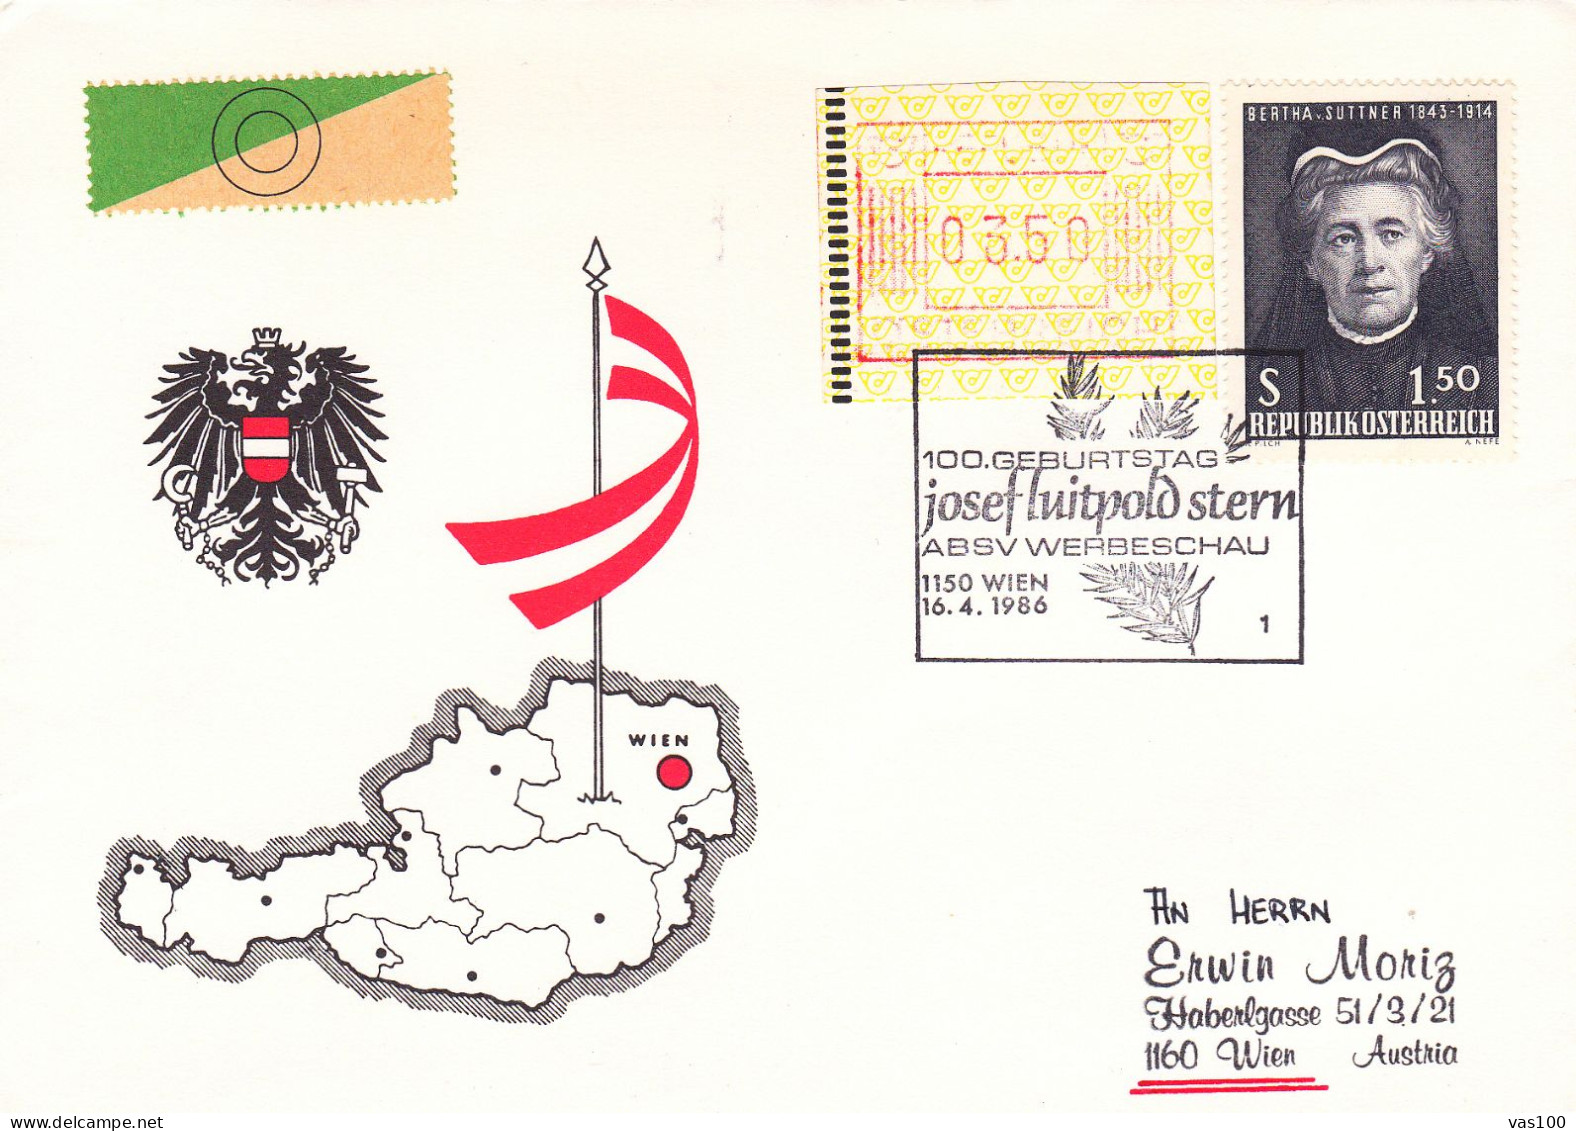 AUSTRIA POSTAL HISTORY / ABSV WERBESCHAU, 16.04.1986 - Cartas & Documentos